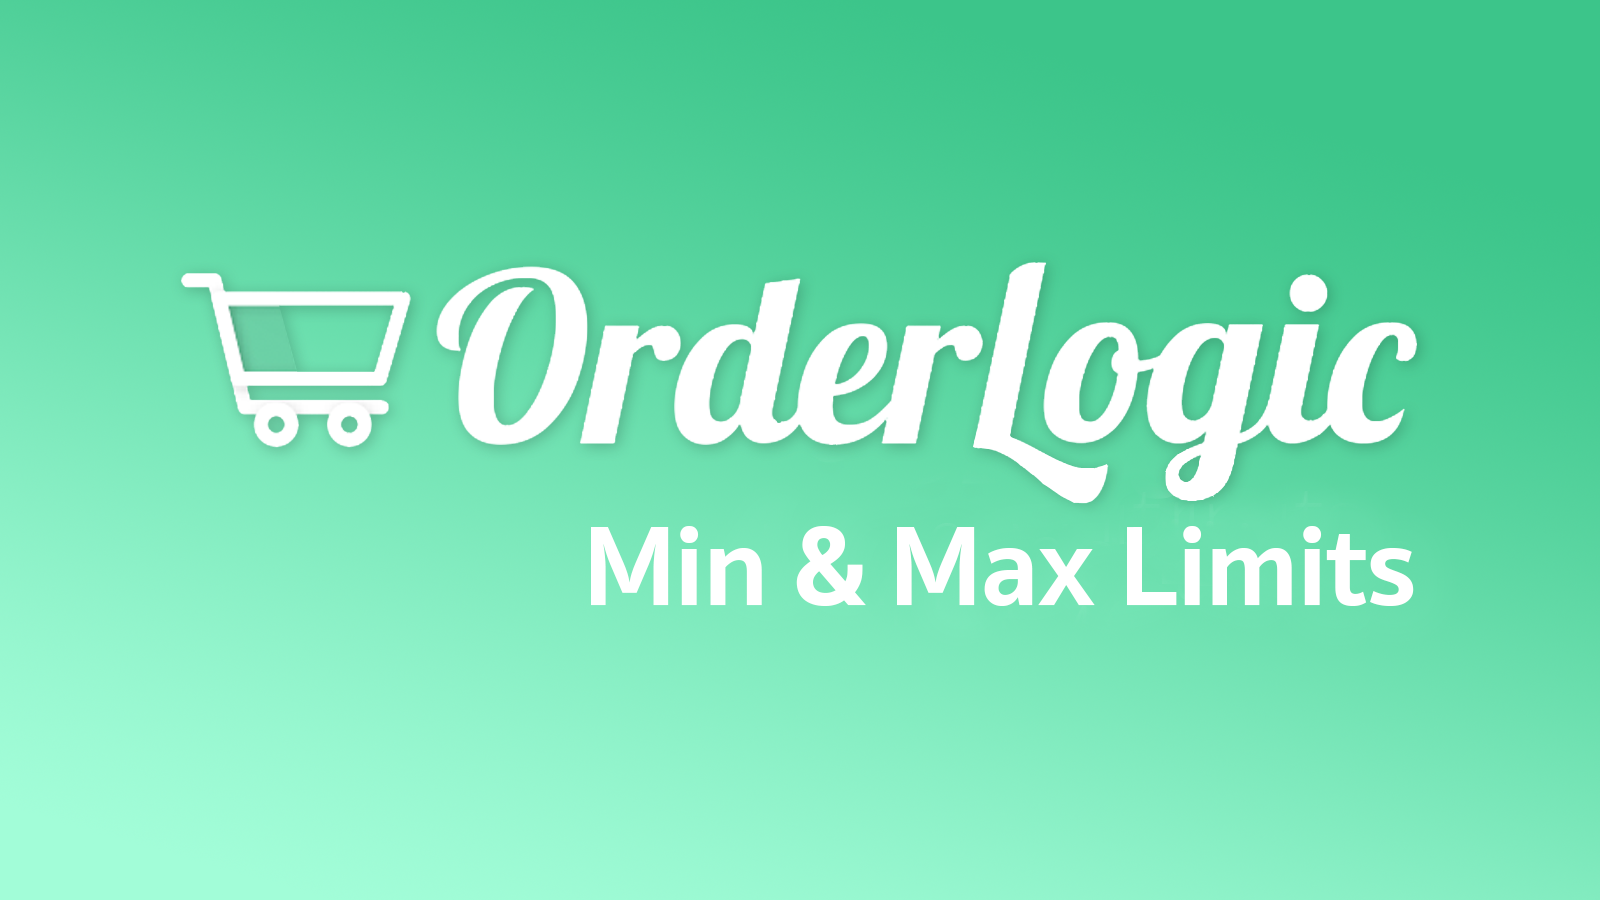 OrderLogic Min & Max Limieten